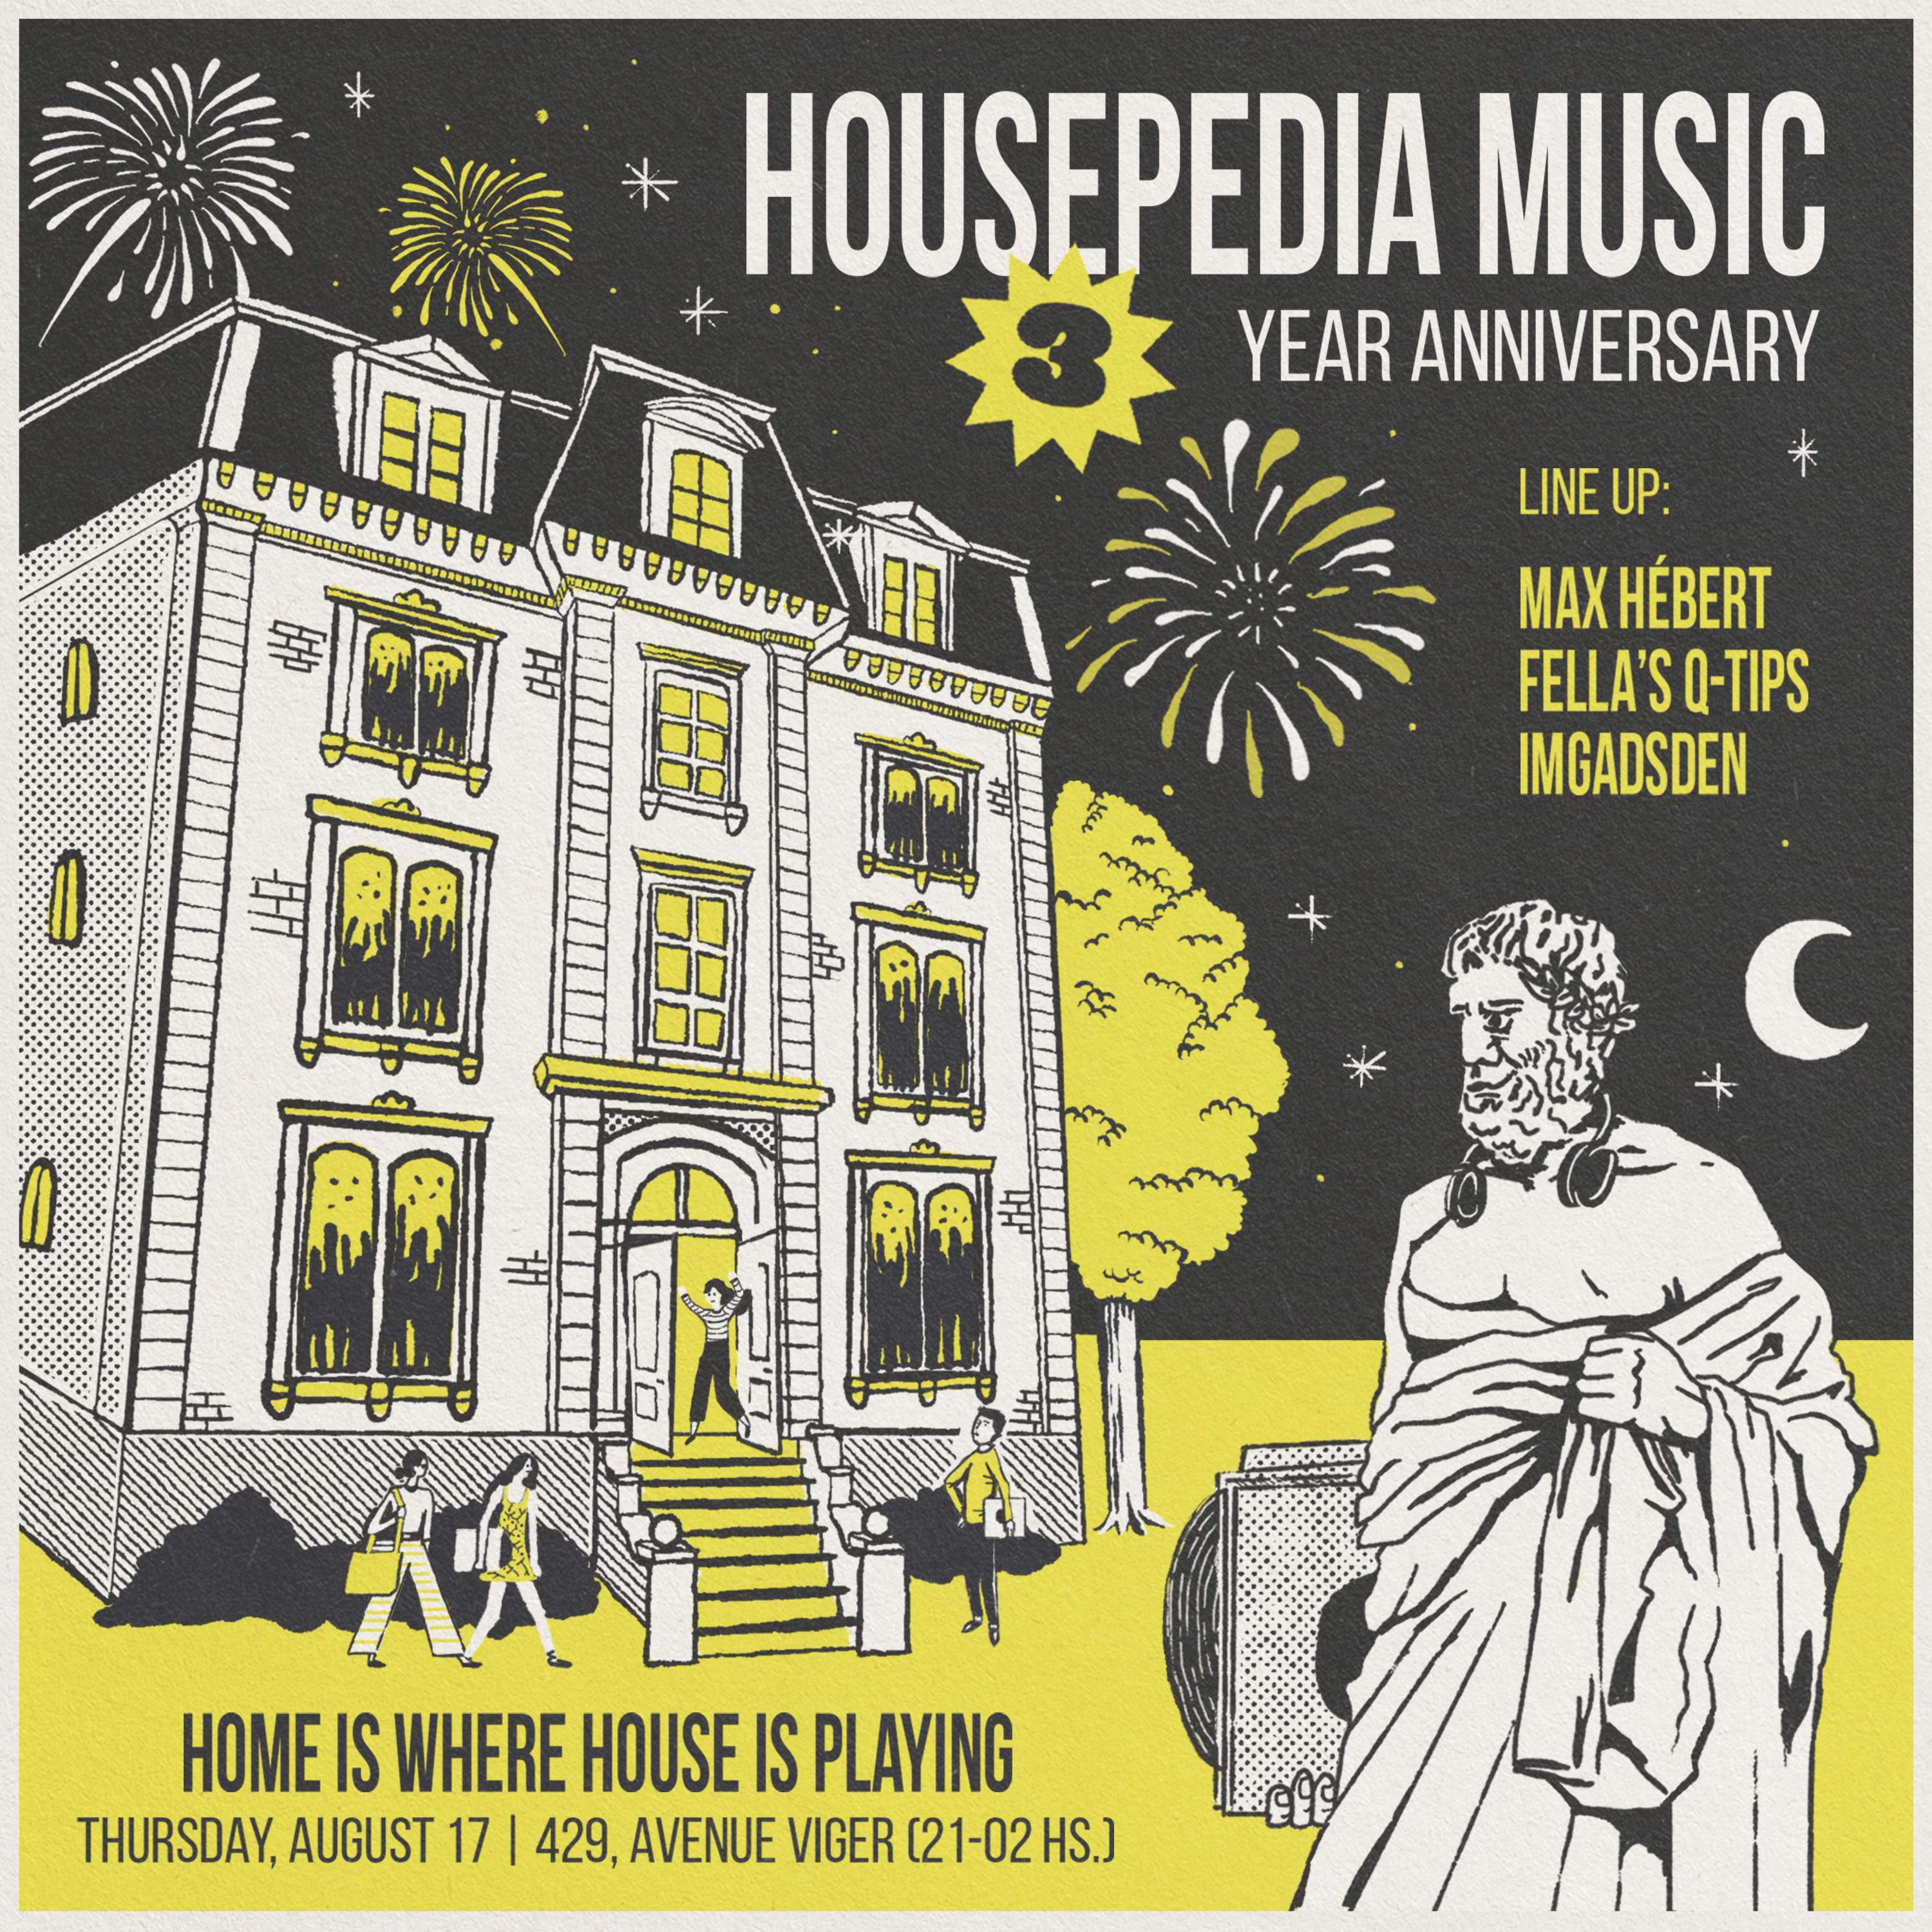 Housepedia Music 3 Years Anniversary - Página frontal